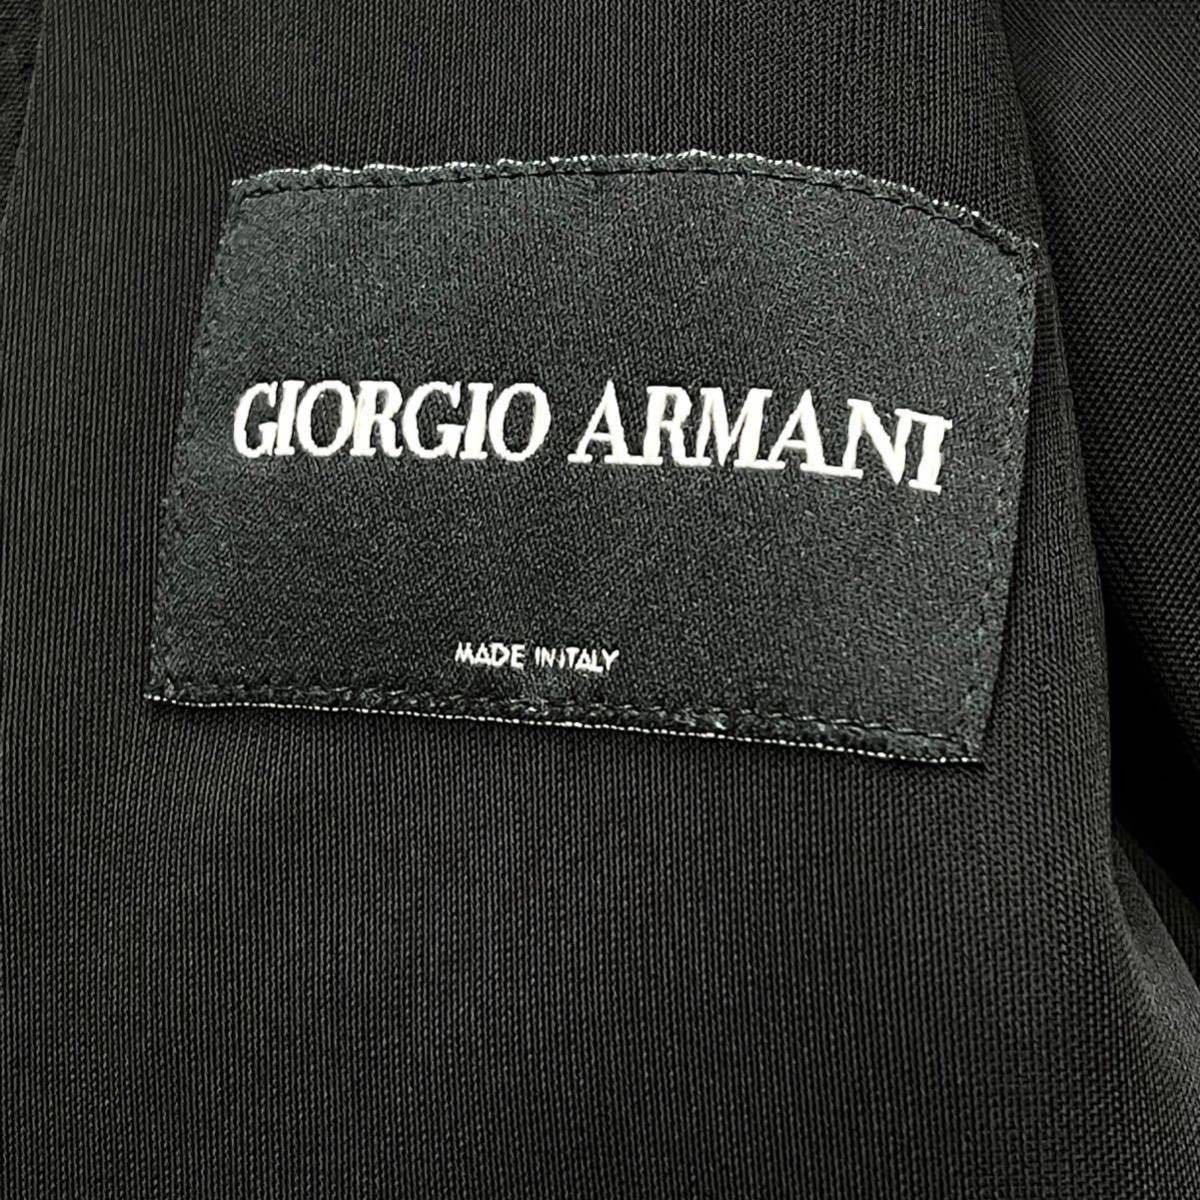 極希少XLサイズ ジョルジオアルマーニ【高貴な風格】 GIORGIO ARMANI テーラードジャケット ブラック マオカラー サマーニット  イタリア製